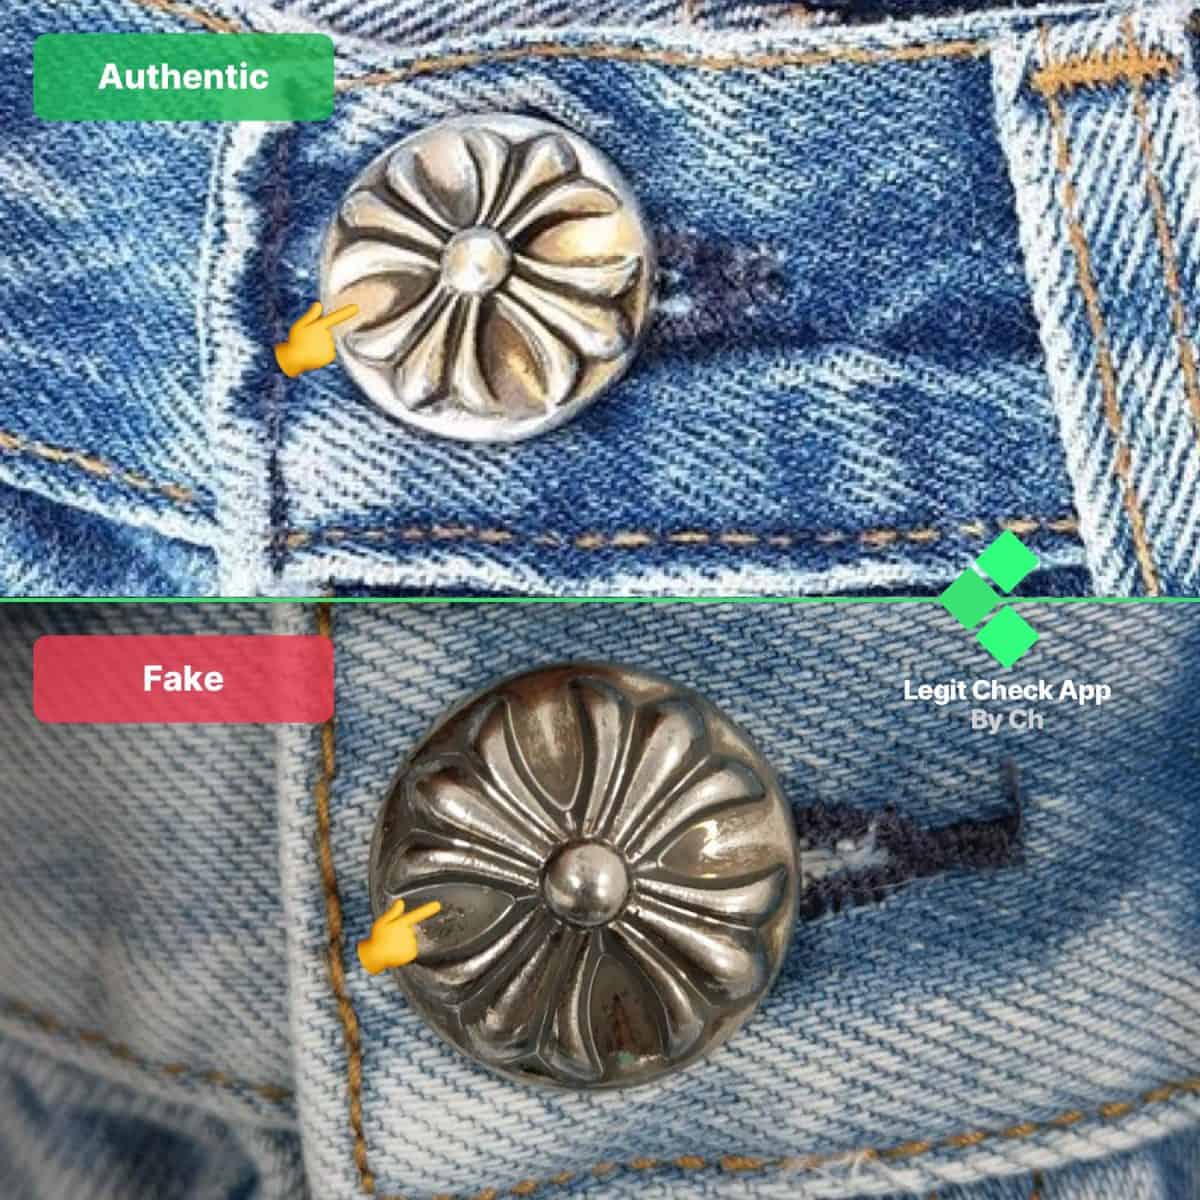 Хромированные джинсы с сердечками Authentic vs Replica